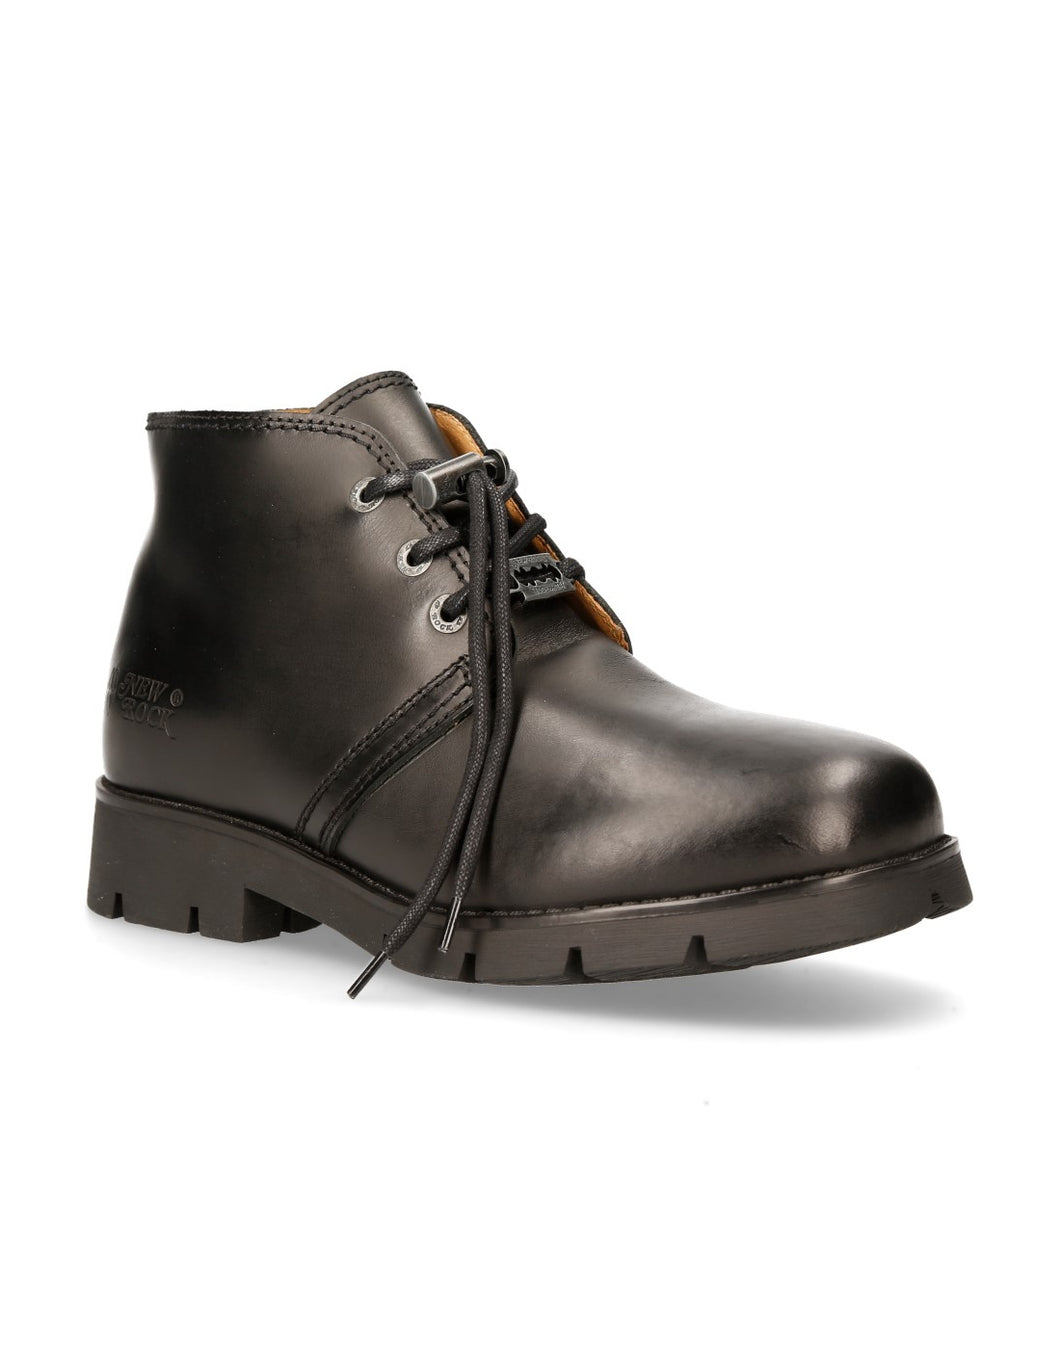 New Rock M-RANGER042-S1 Boots Schuhe Echtleder Black